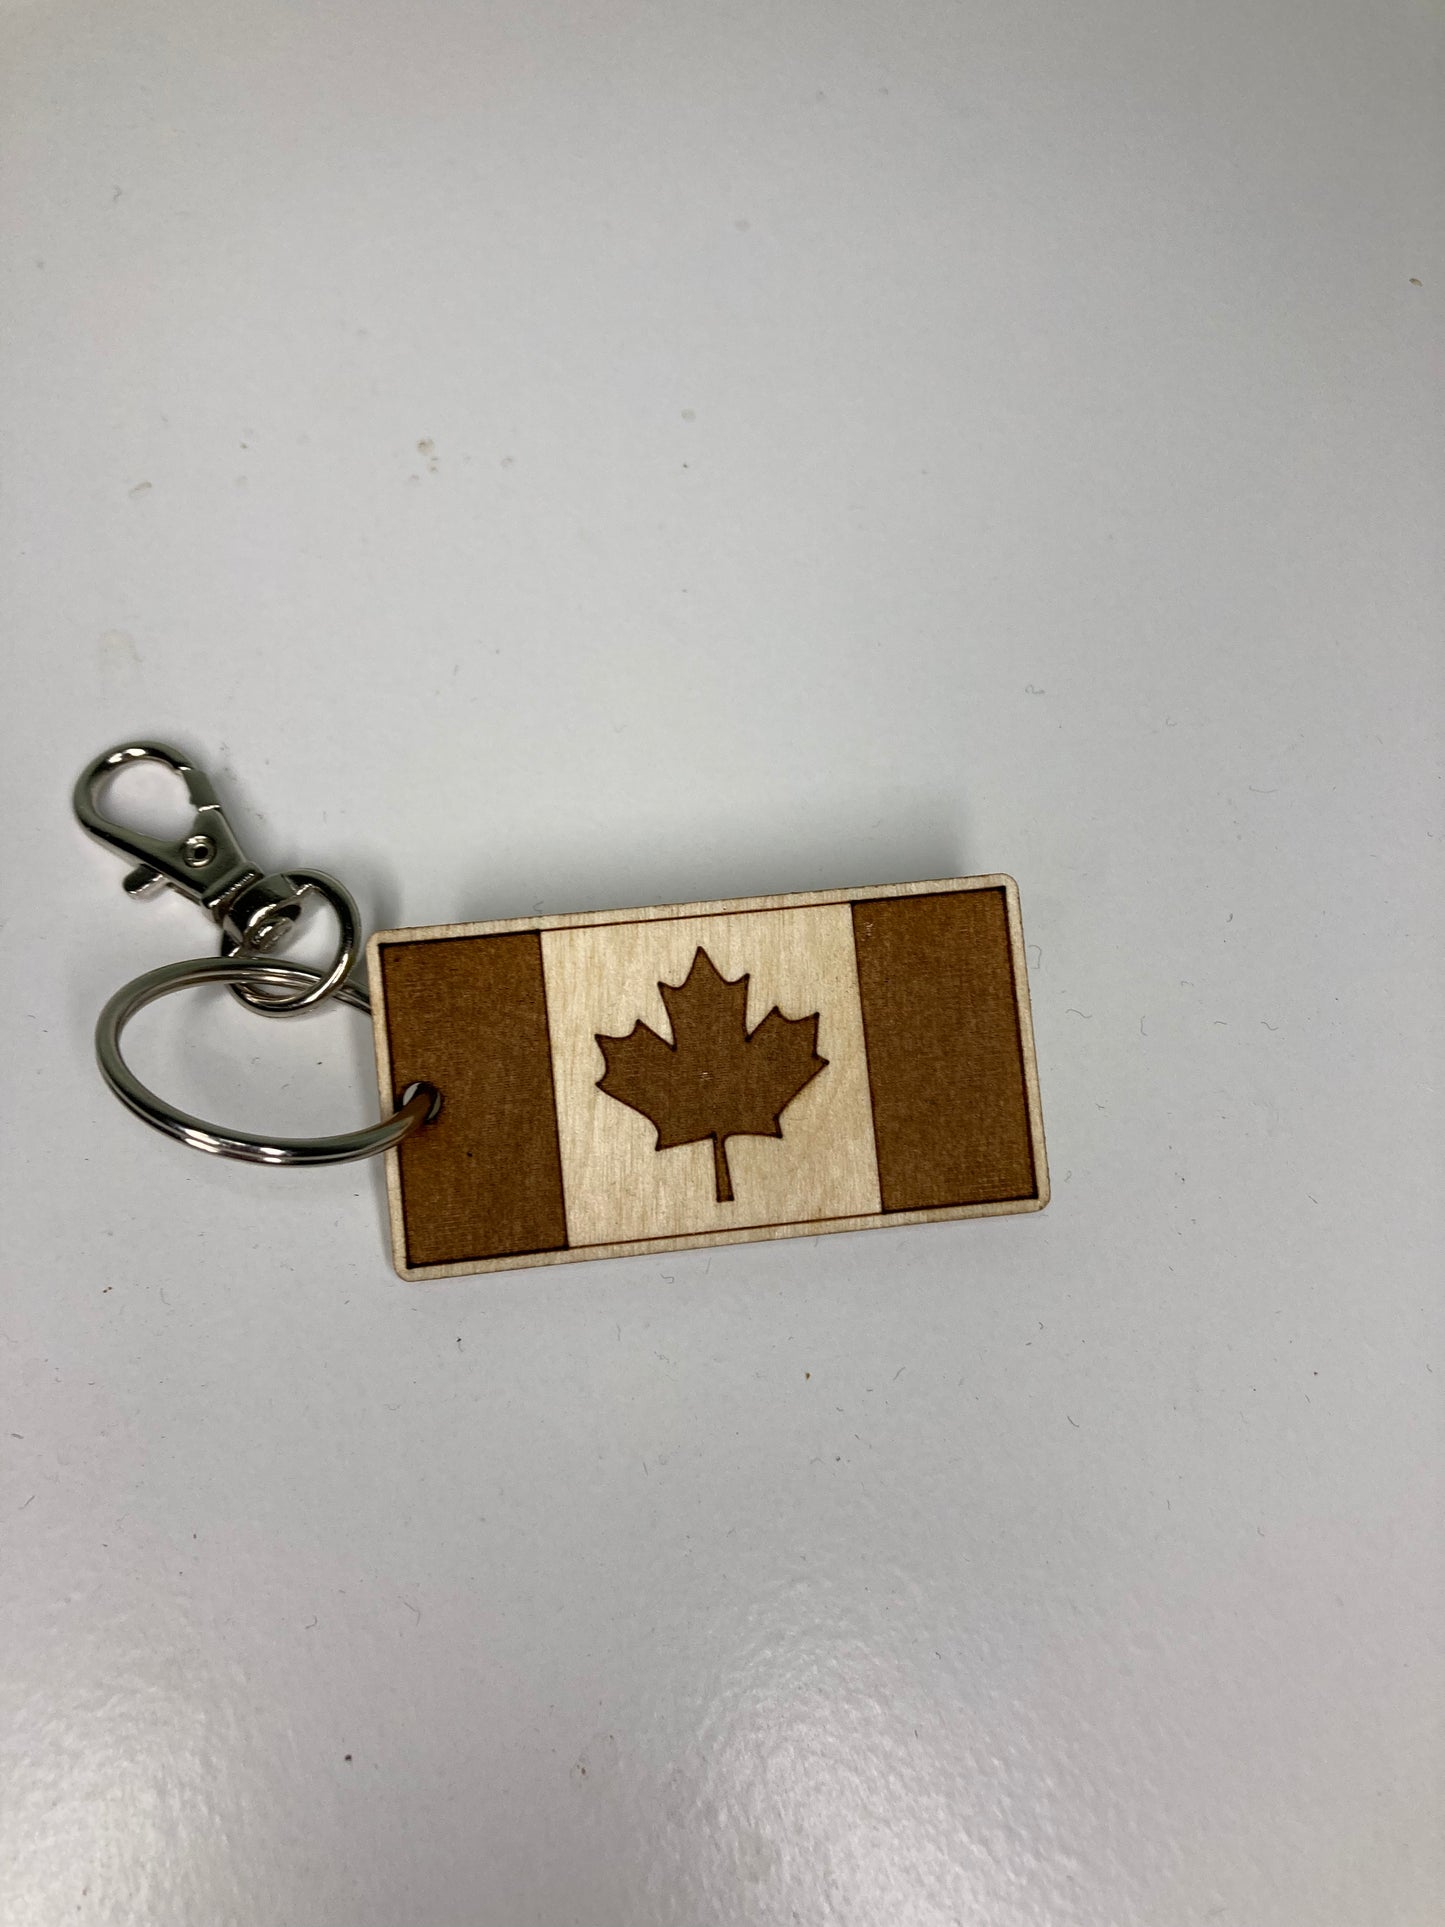 Canada Flag Keychain